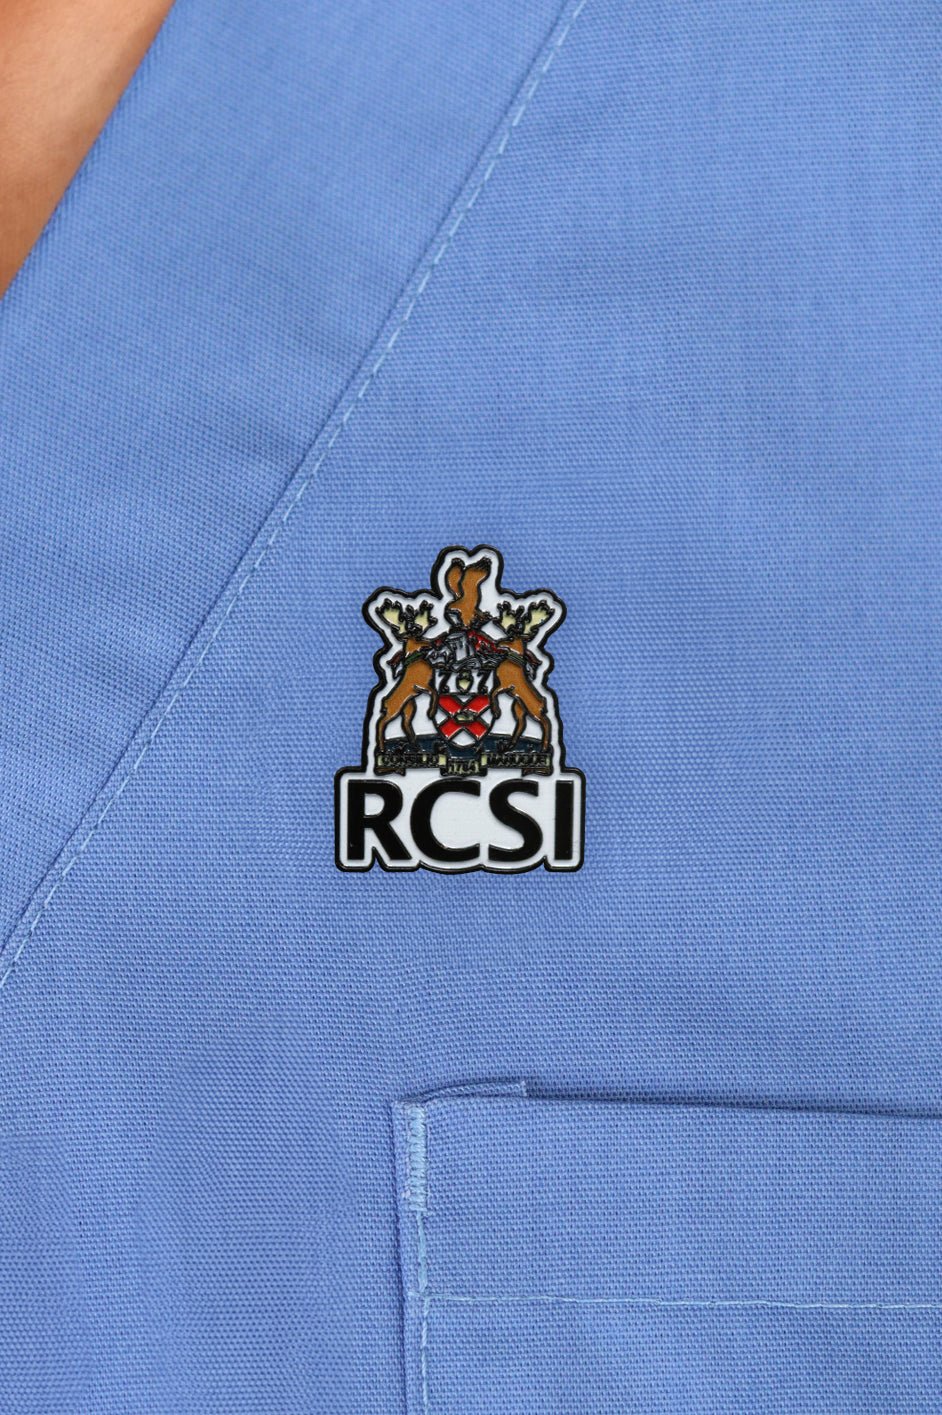 RCSI logo Pin